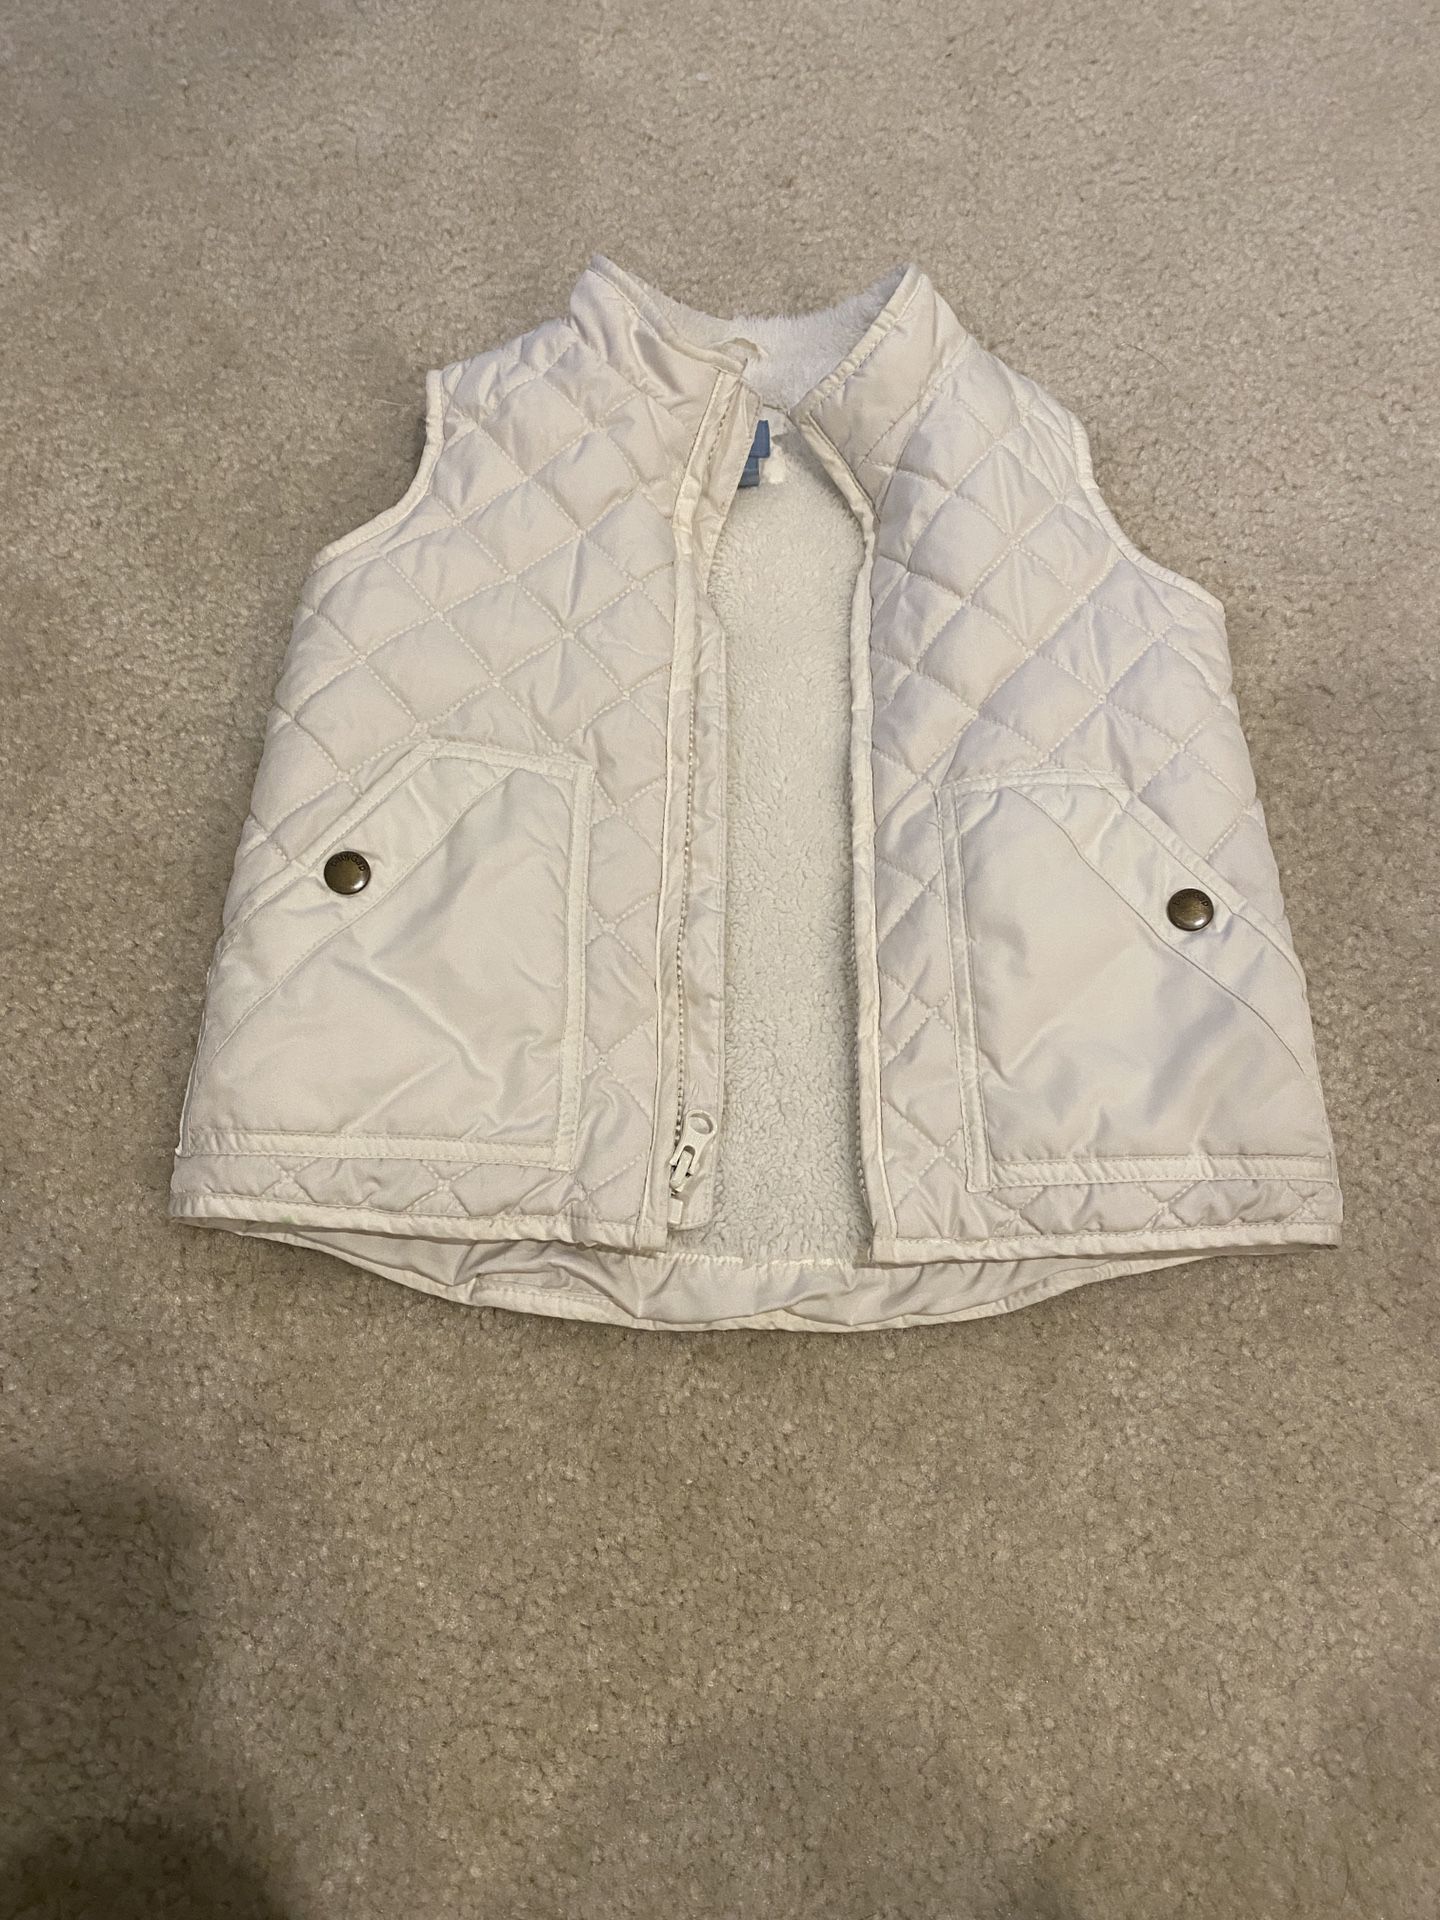 Girls baby gap vest, size 5